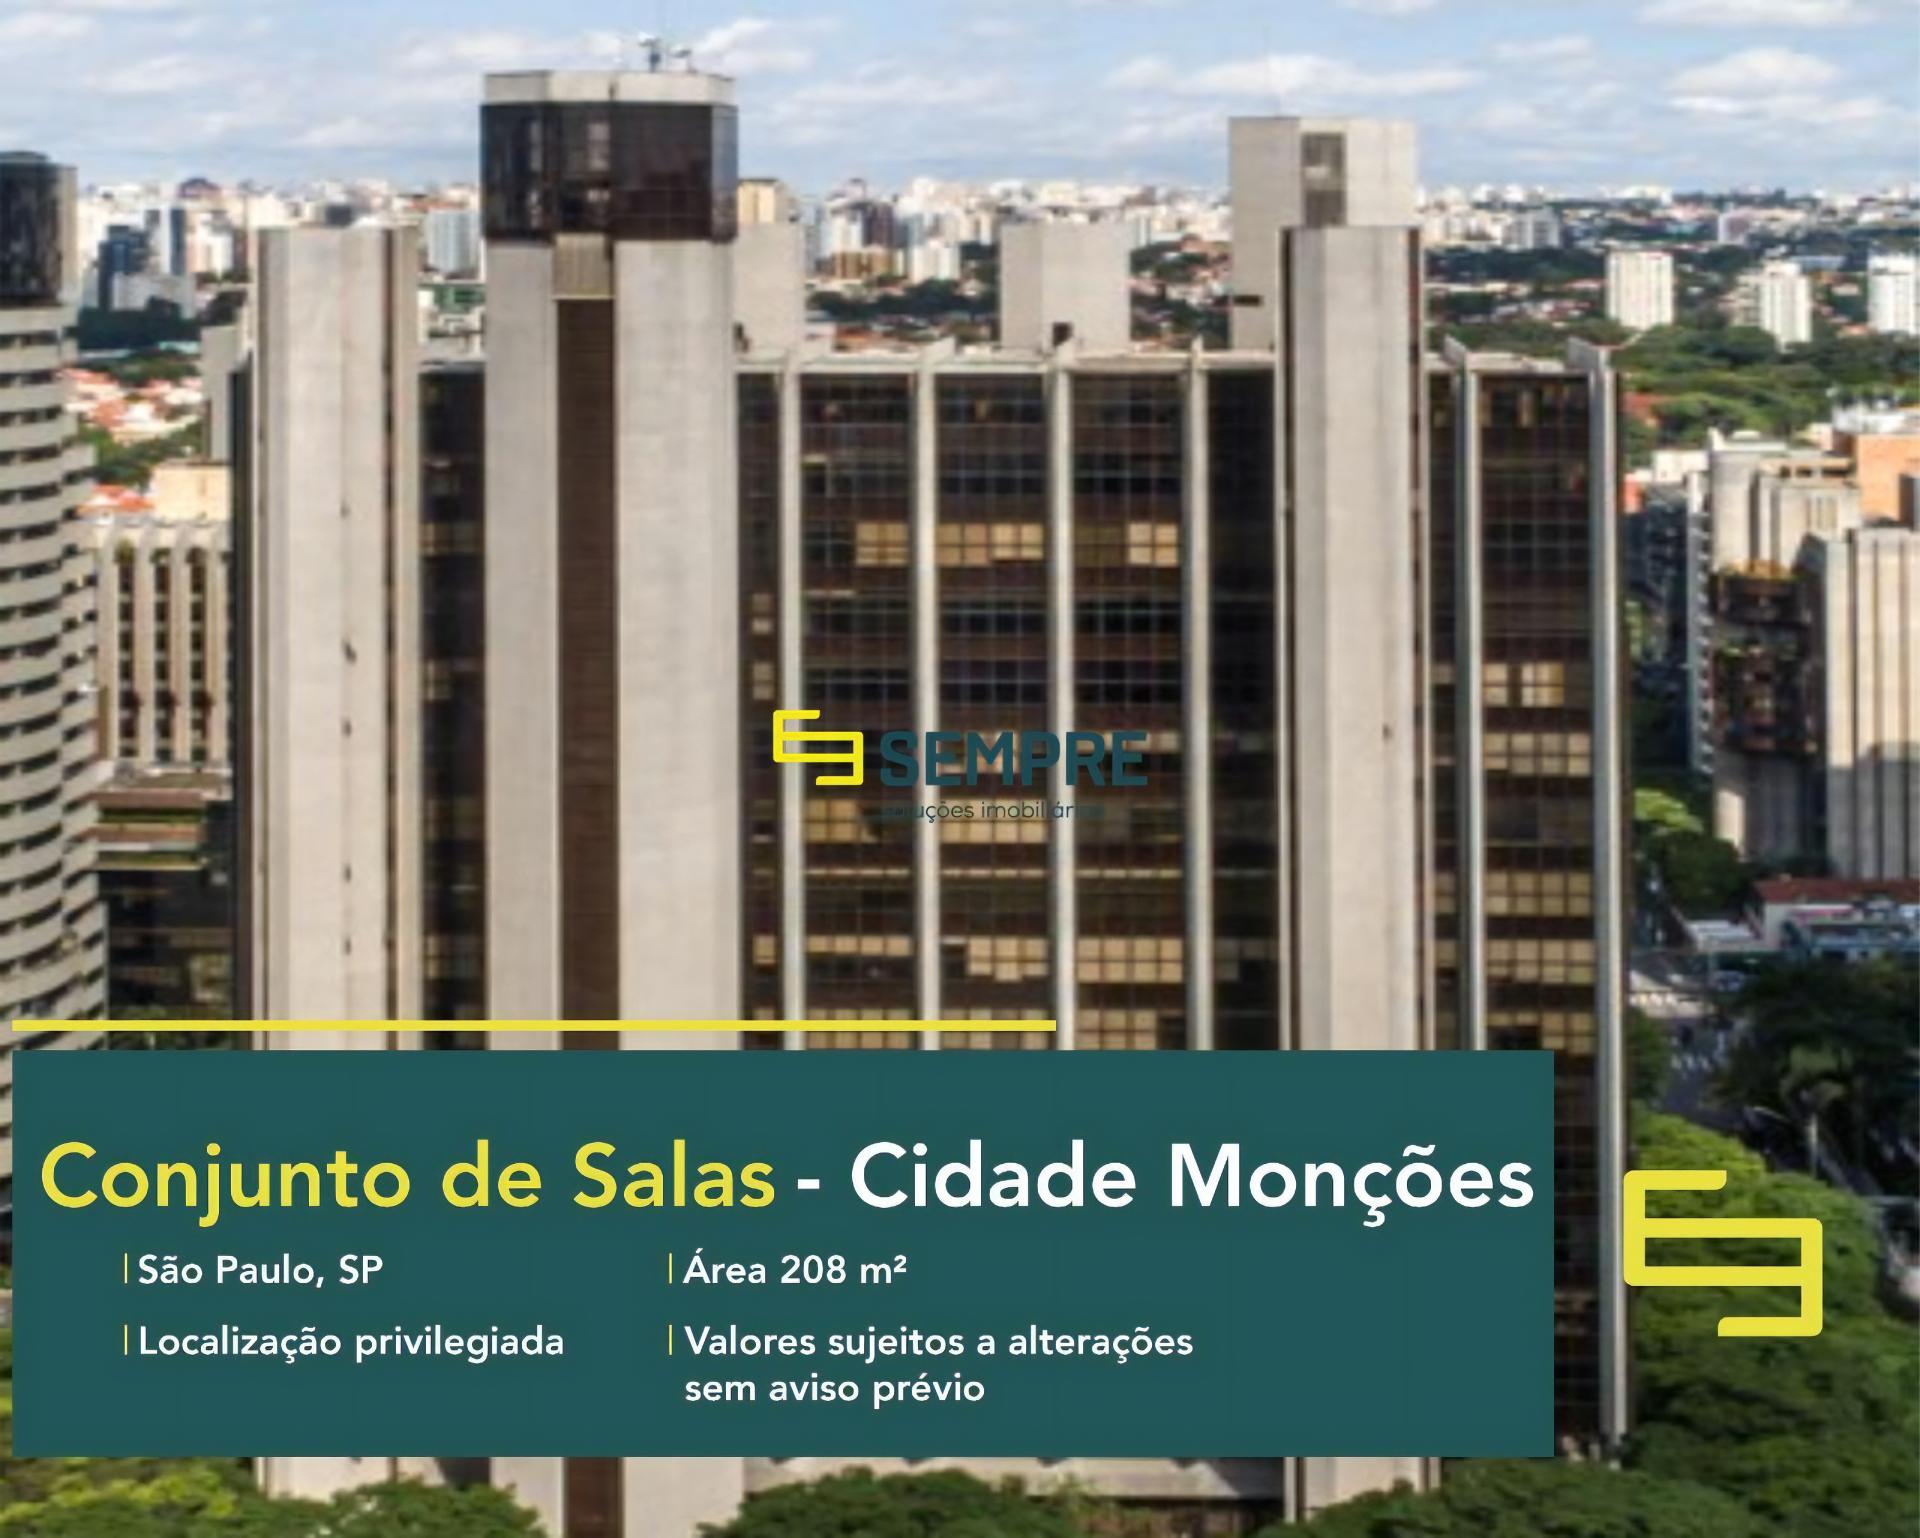 Aluguel de conjunto de salas comerciais na cidade de Monções - São Paulo. O estabelecimento comercial conta, sobretudo, com área de 208 m².